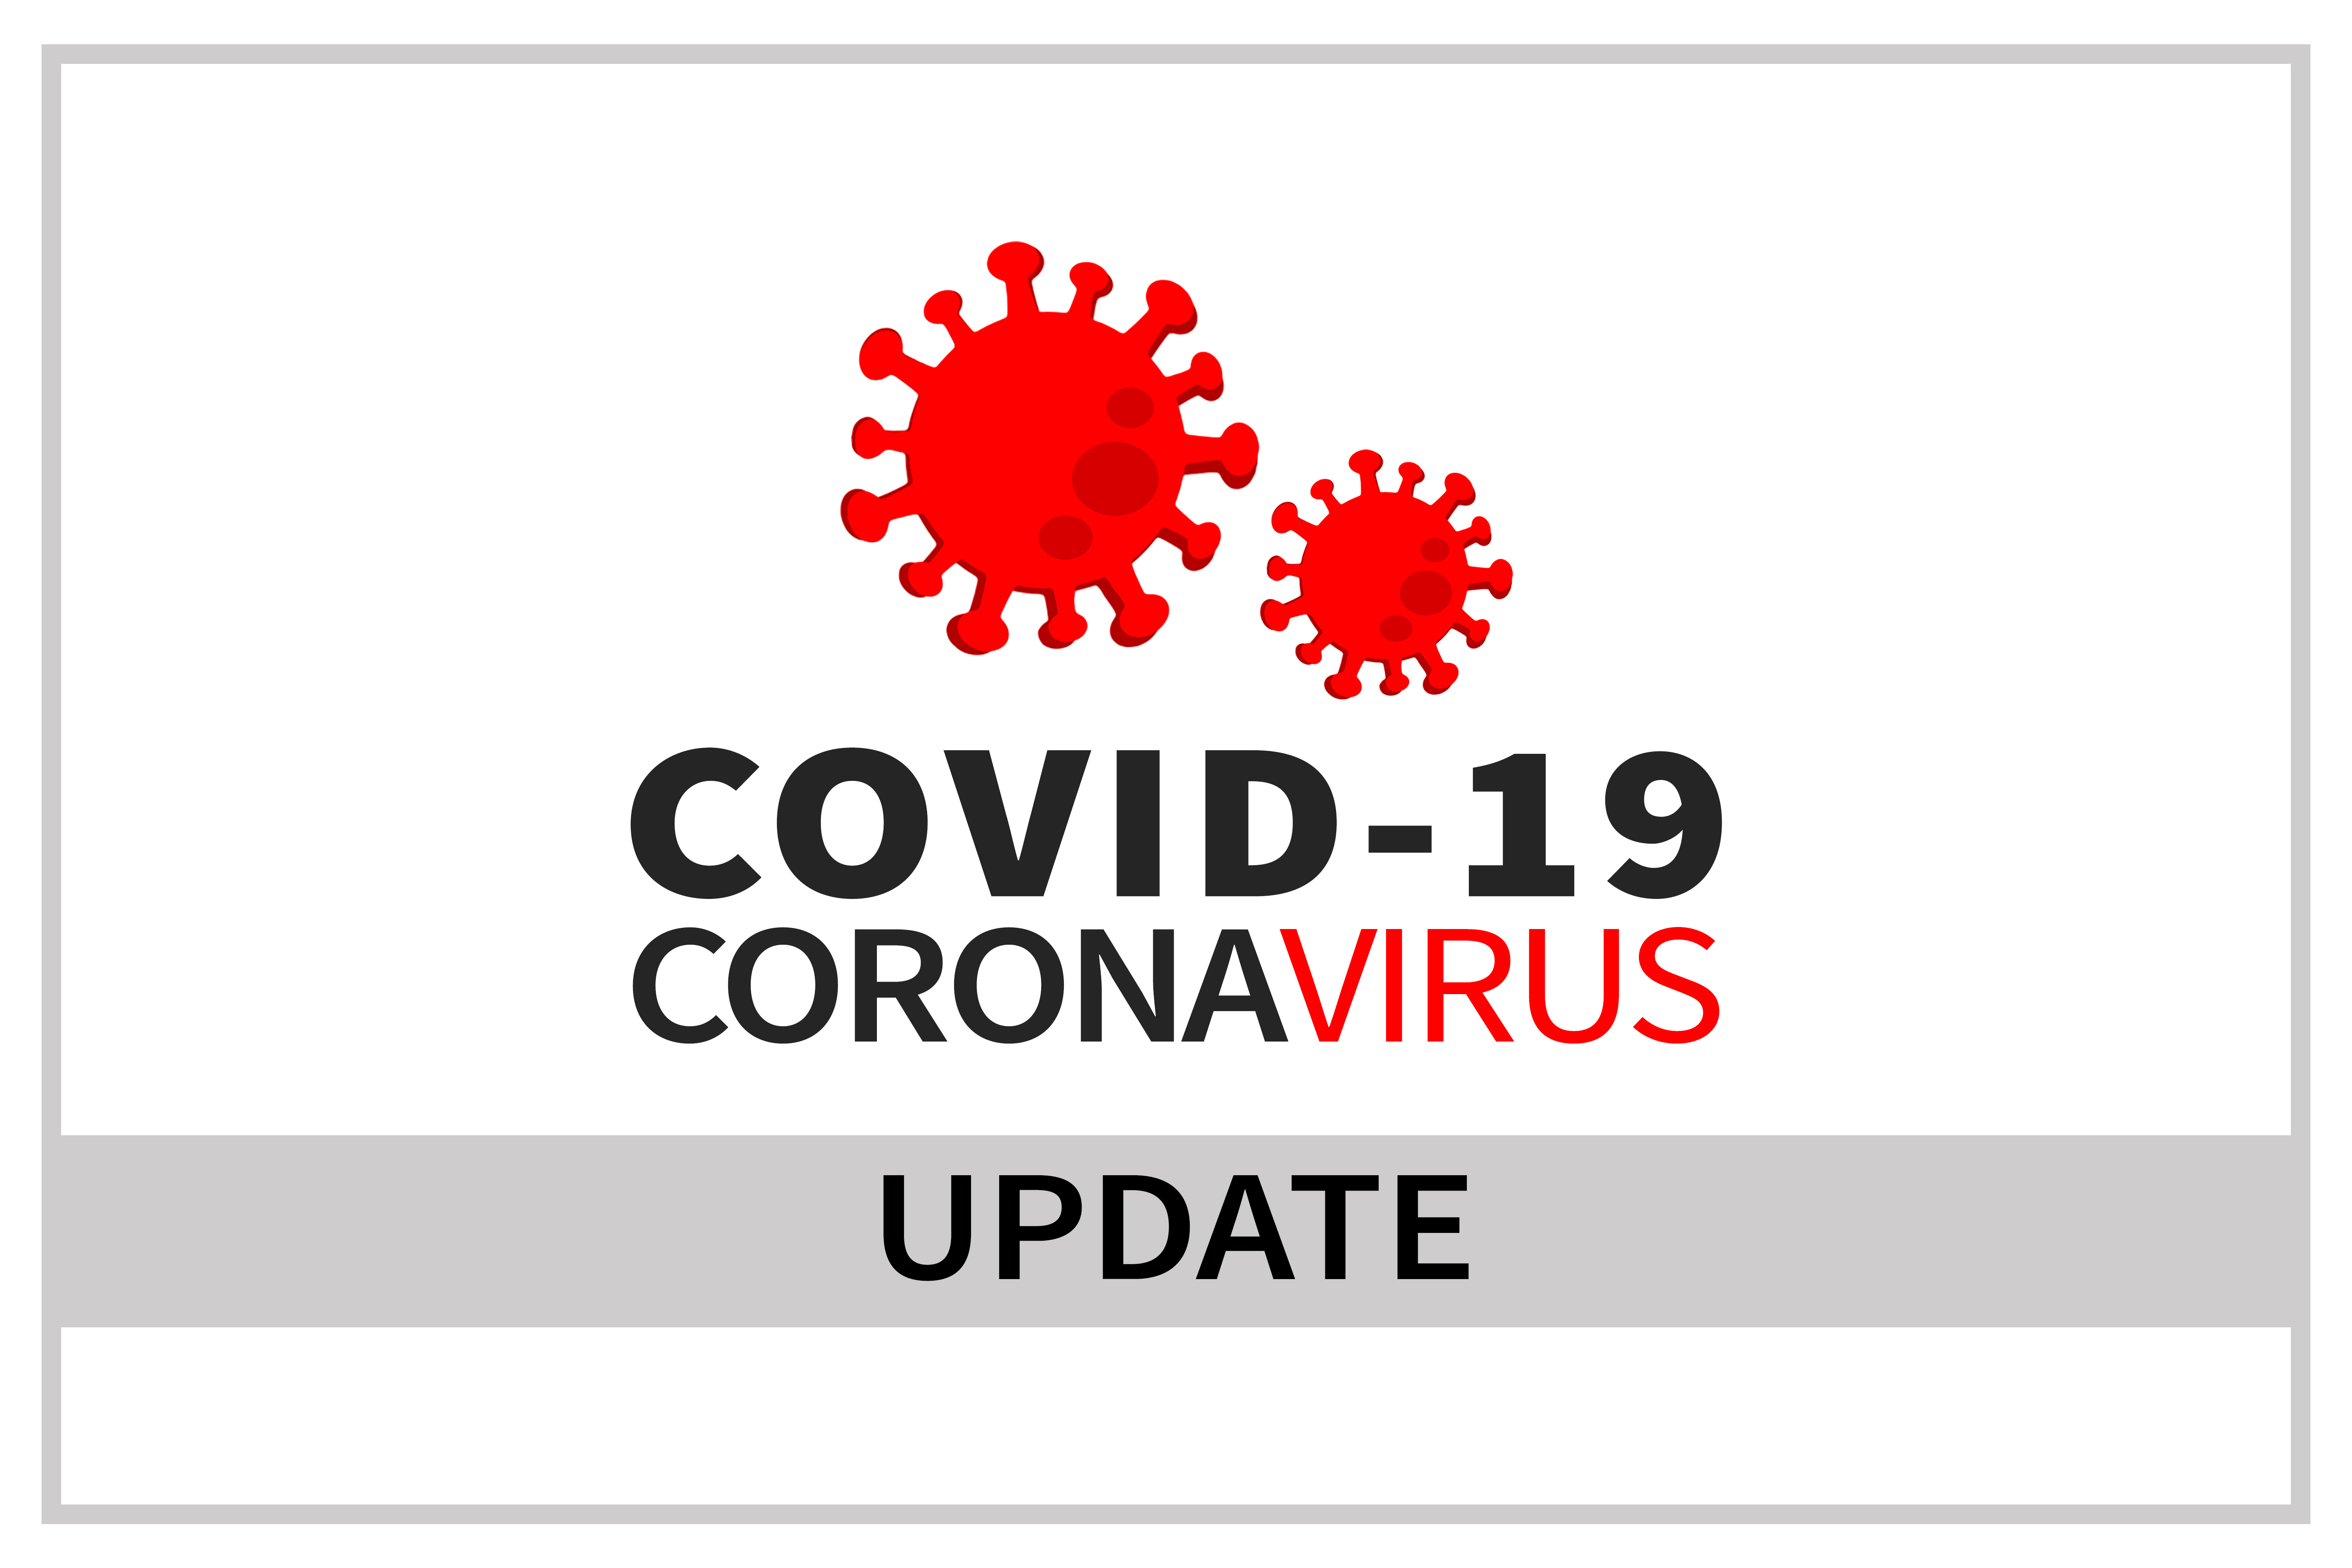 Covid-19-Update